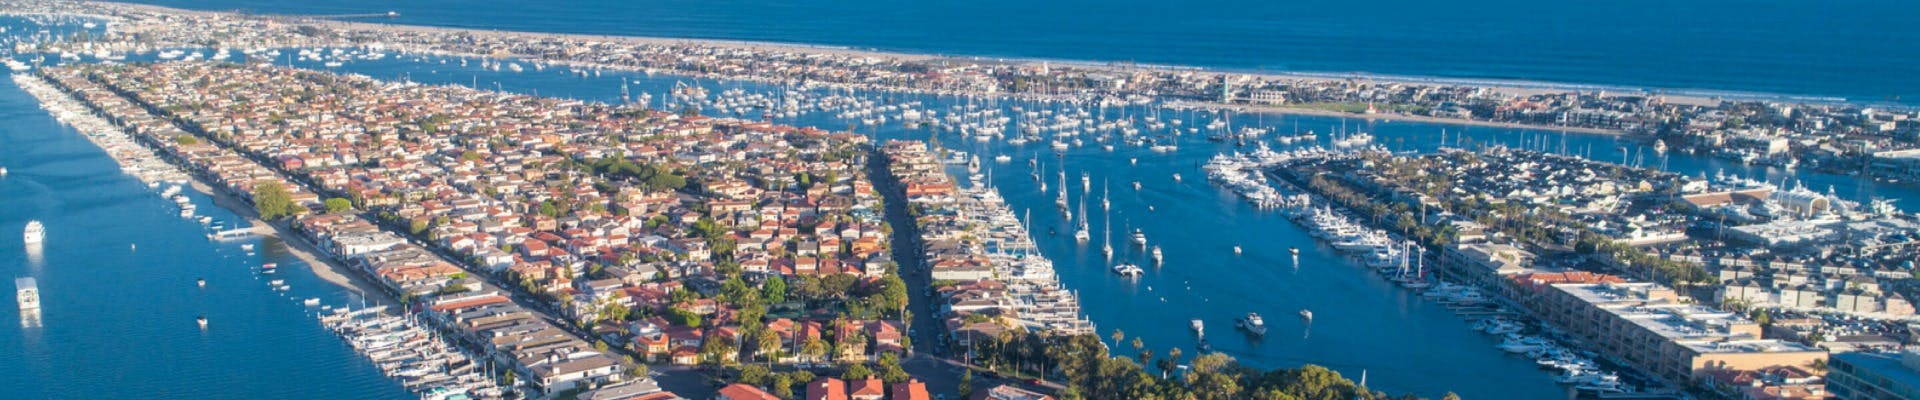 Yachting in Newport Beach, CA